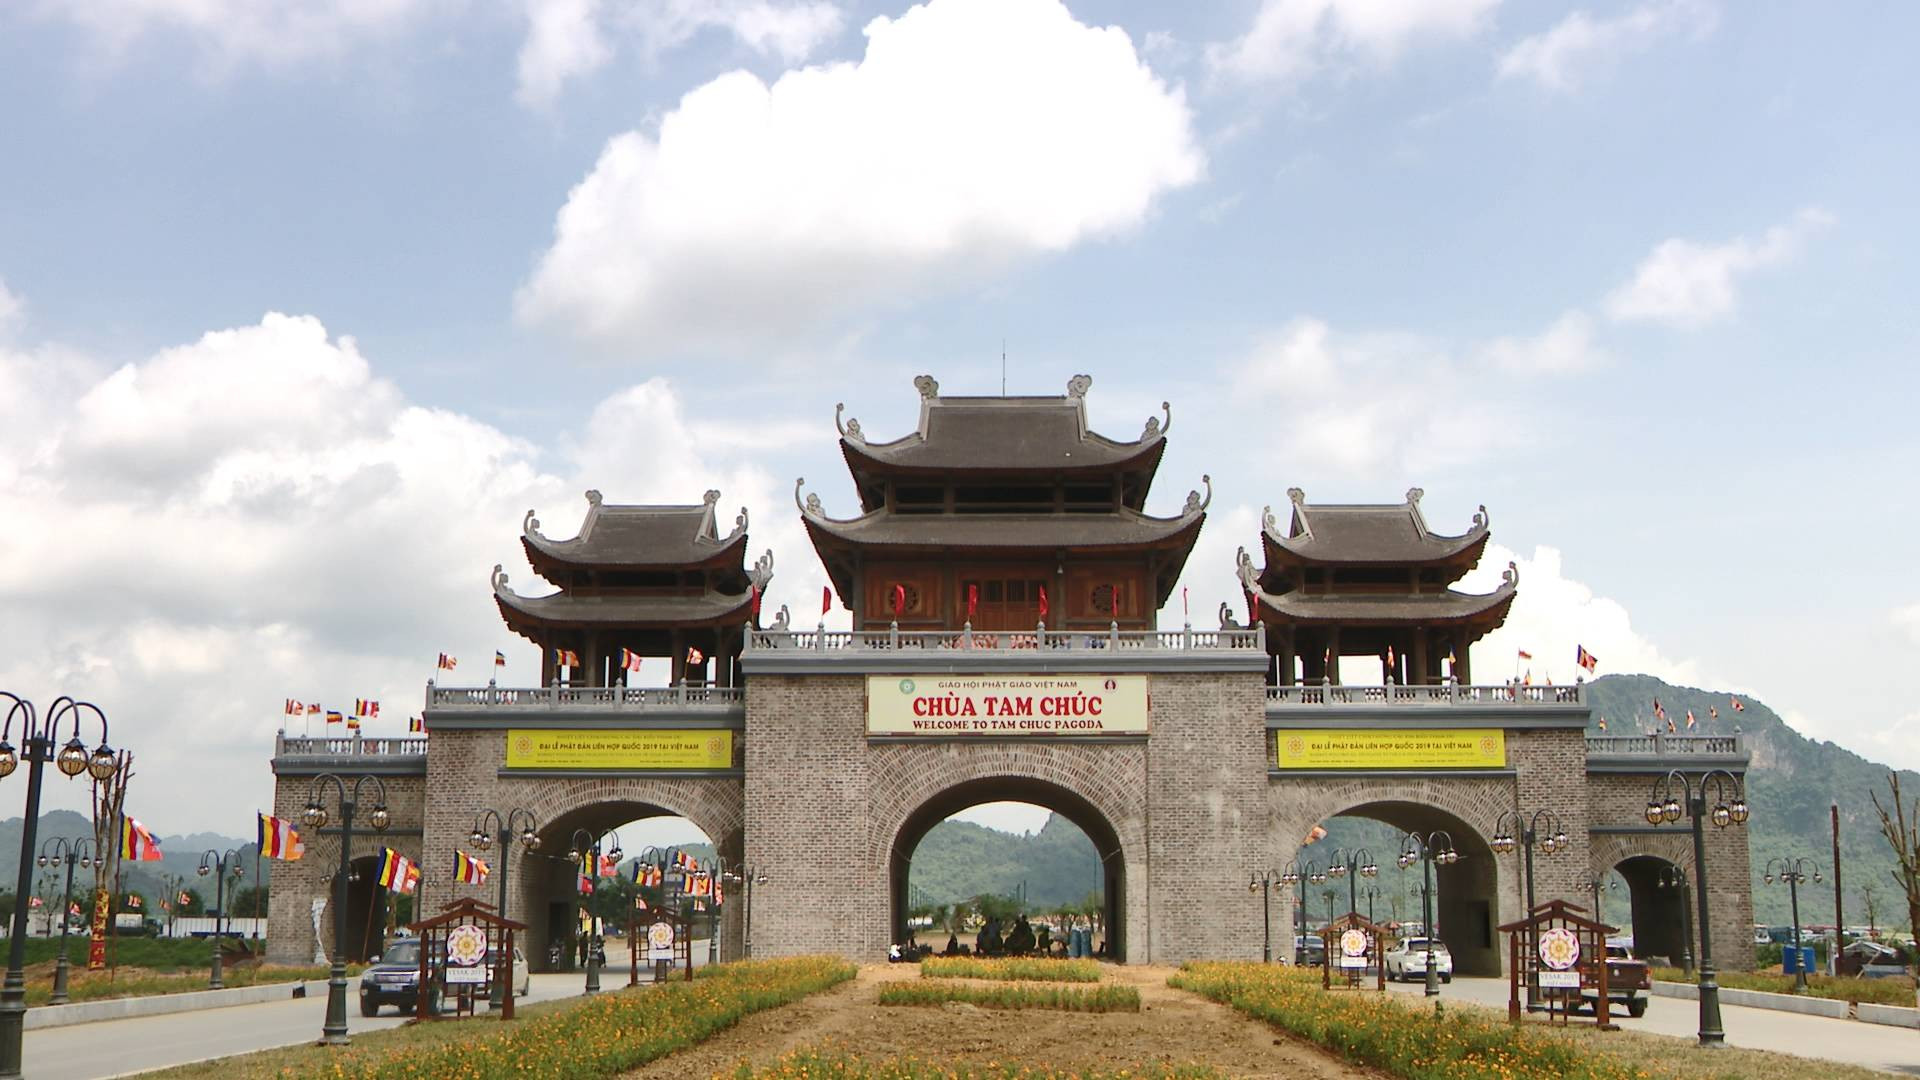 Hai bên cổng Tam quan là 2 con đường lớn để bạn đi bộ lên các chính điện lớn của chùa